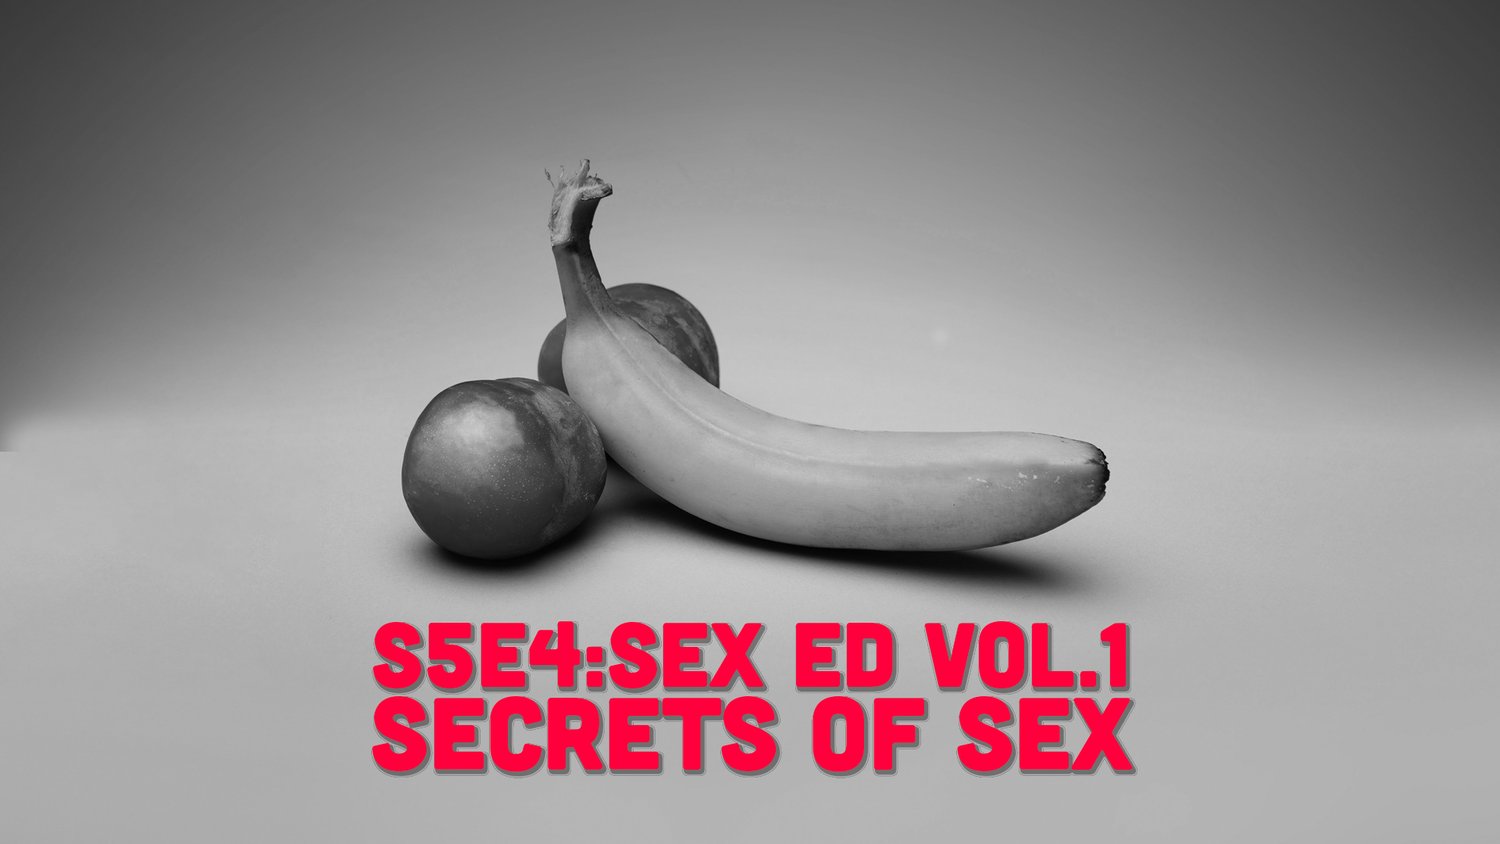 S5E4 - Sex Ed Vol.1: Secrets of Sex